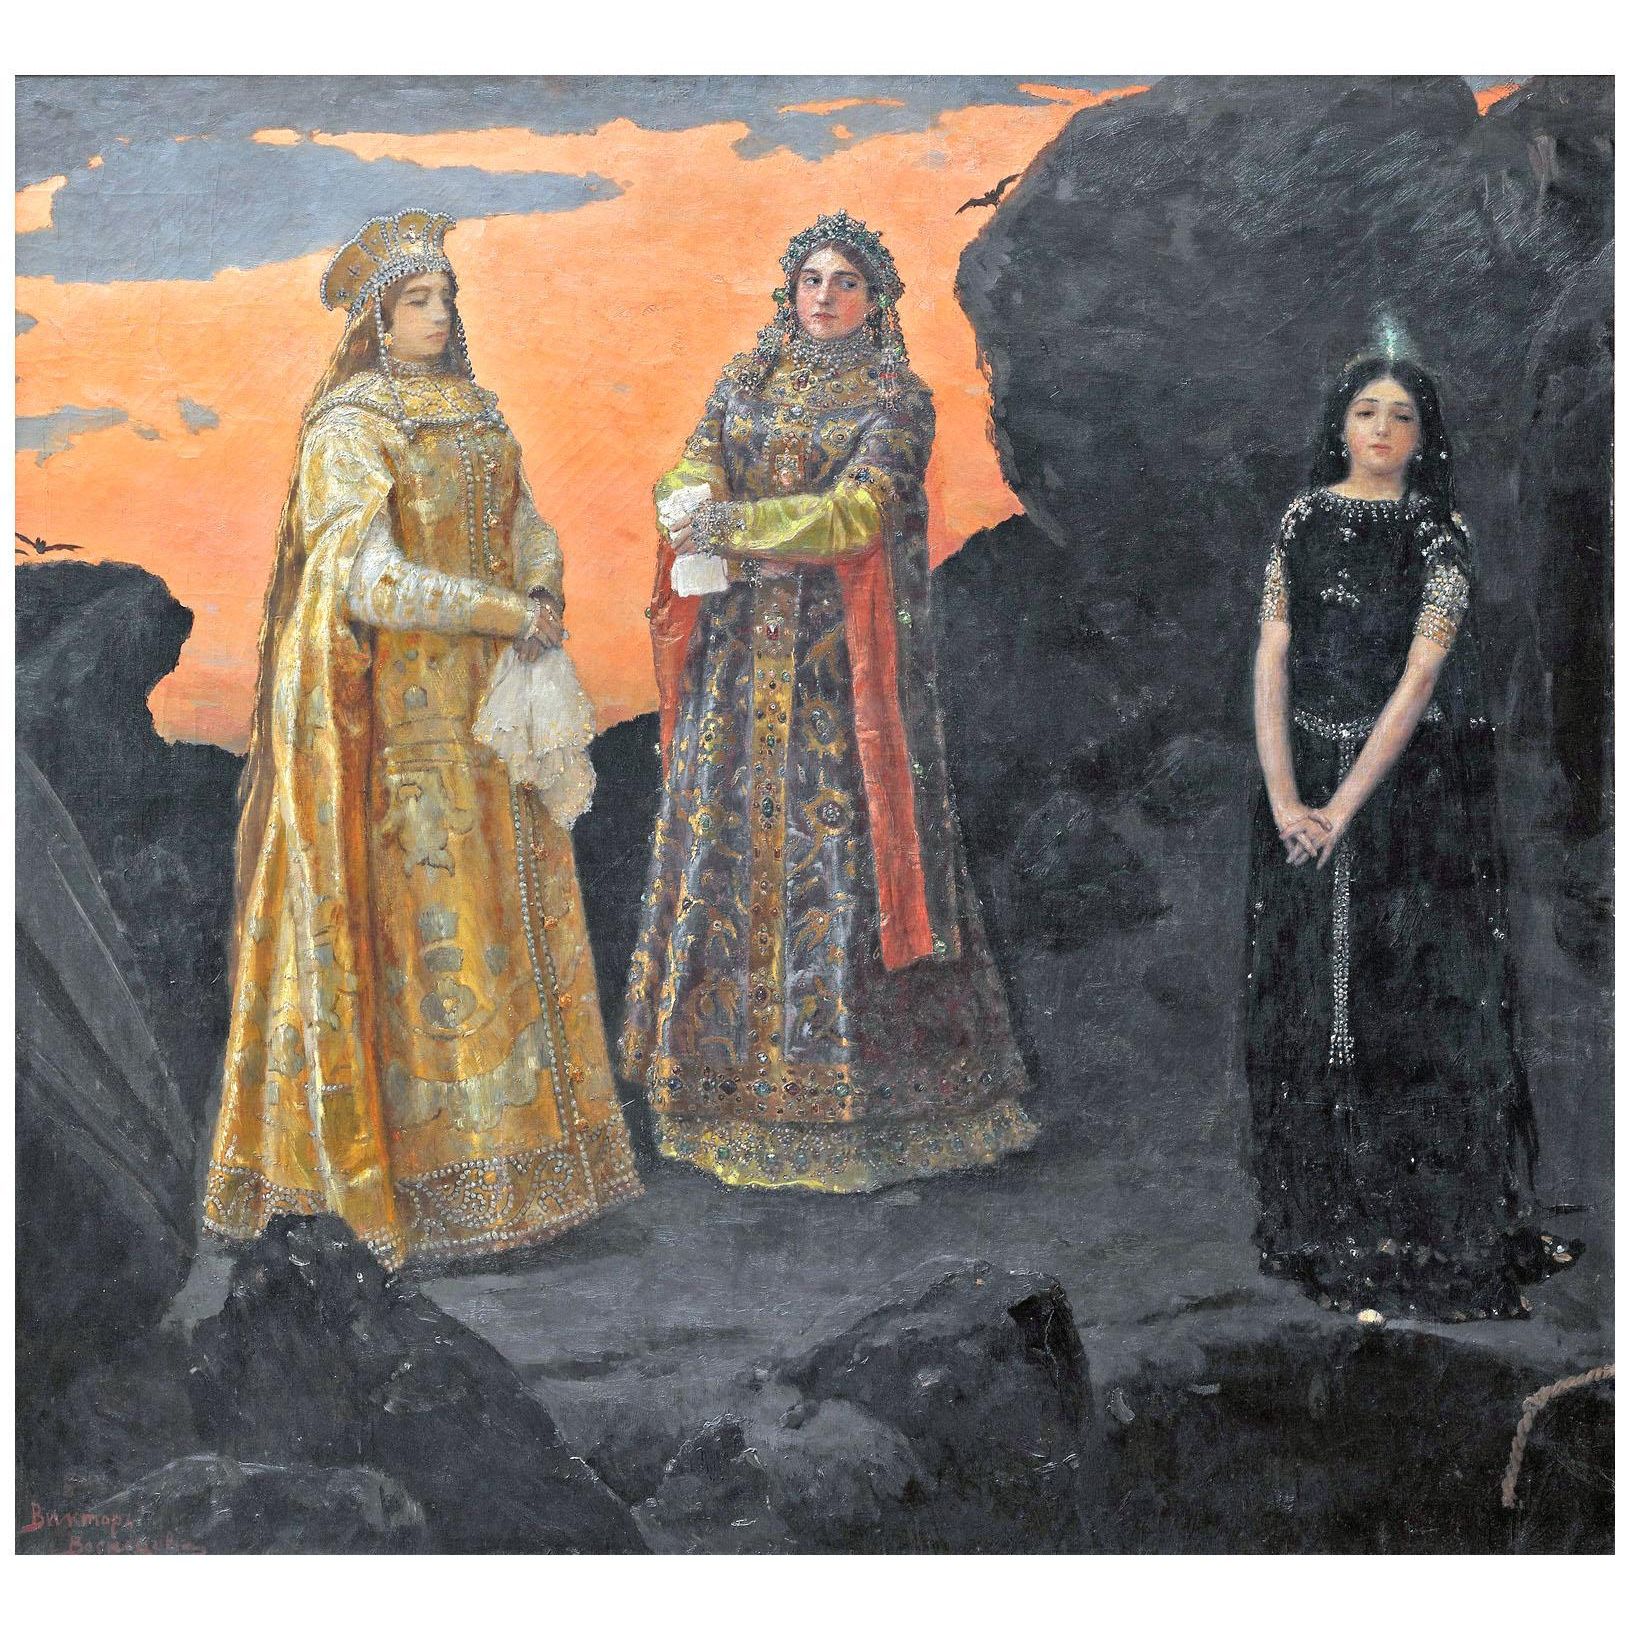 Виктор Васнецов. Три царевны подземного царства. 1879. Третьяковская галерея